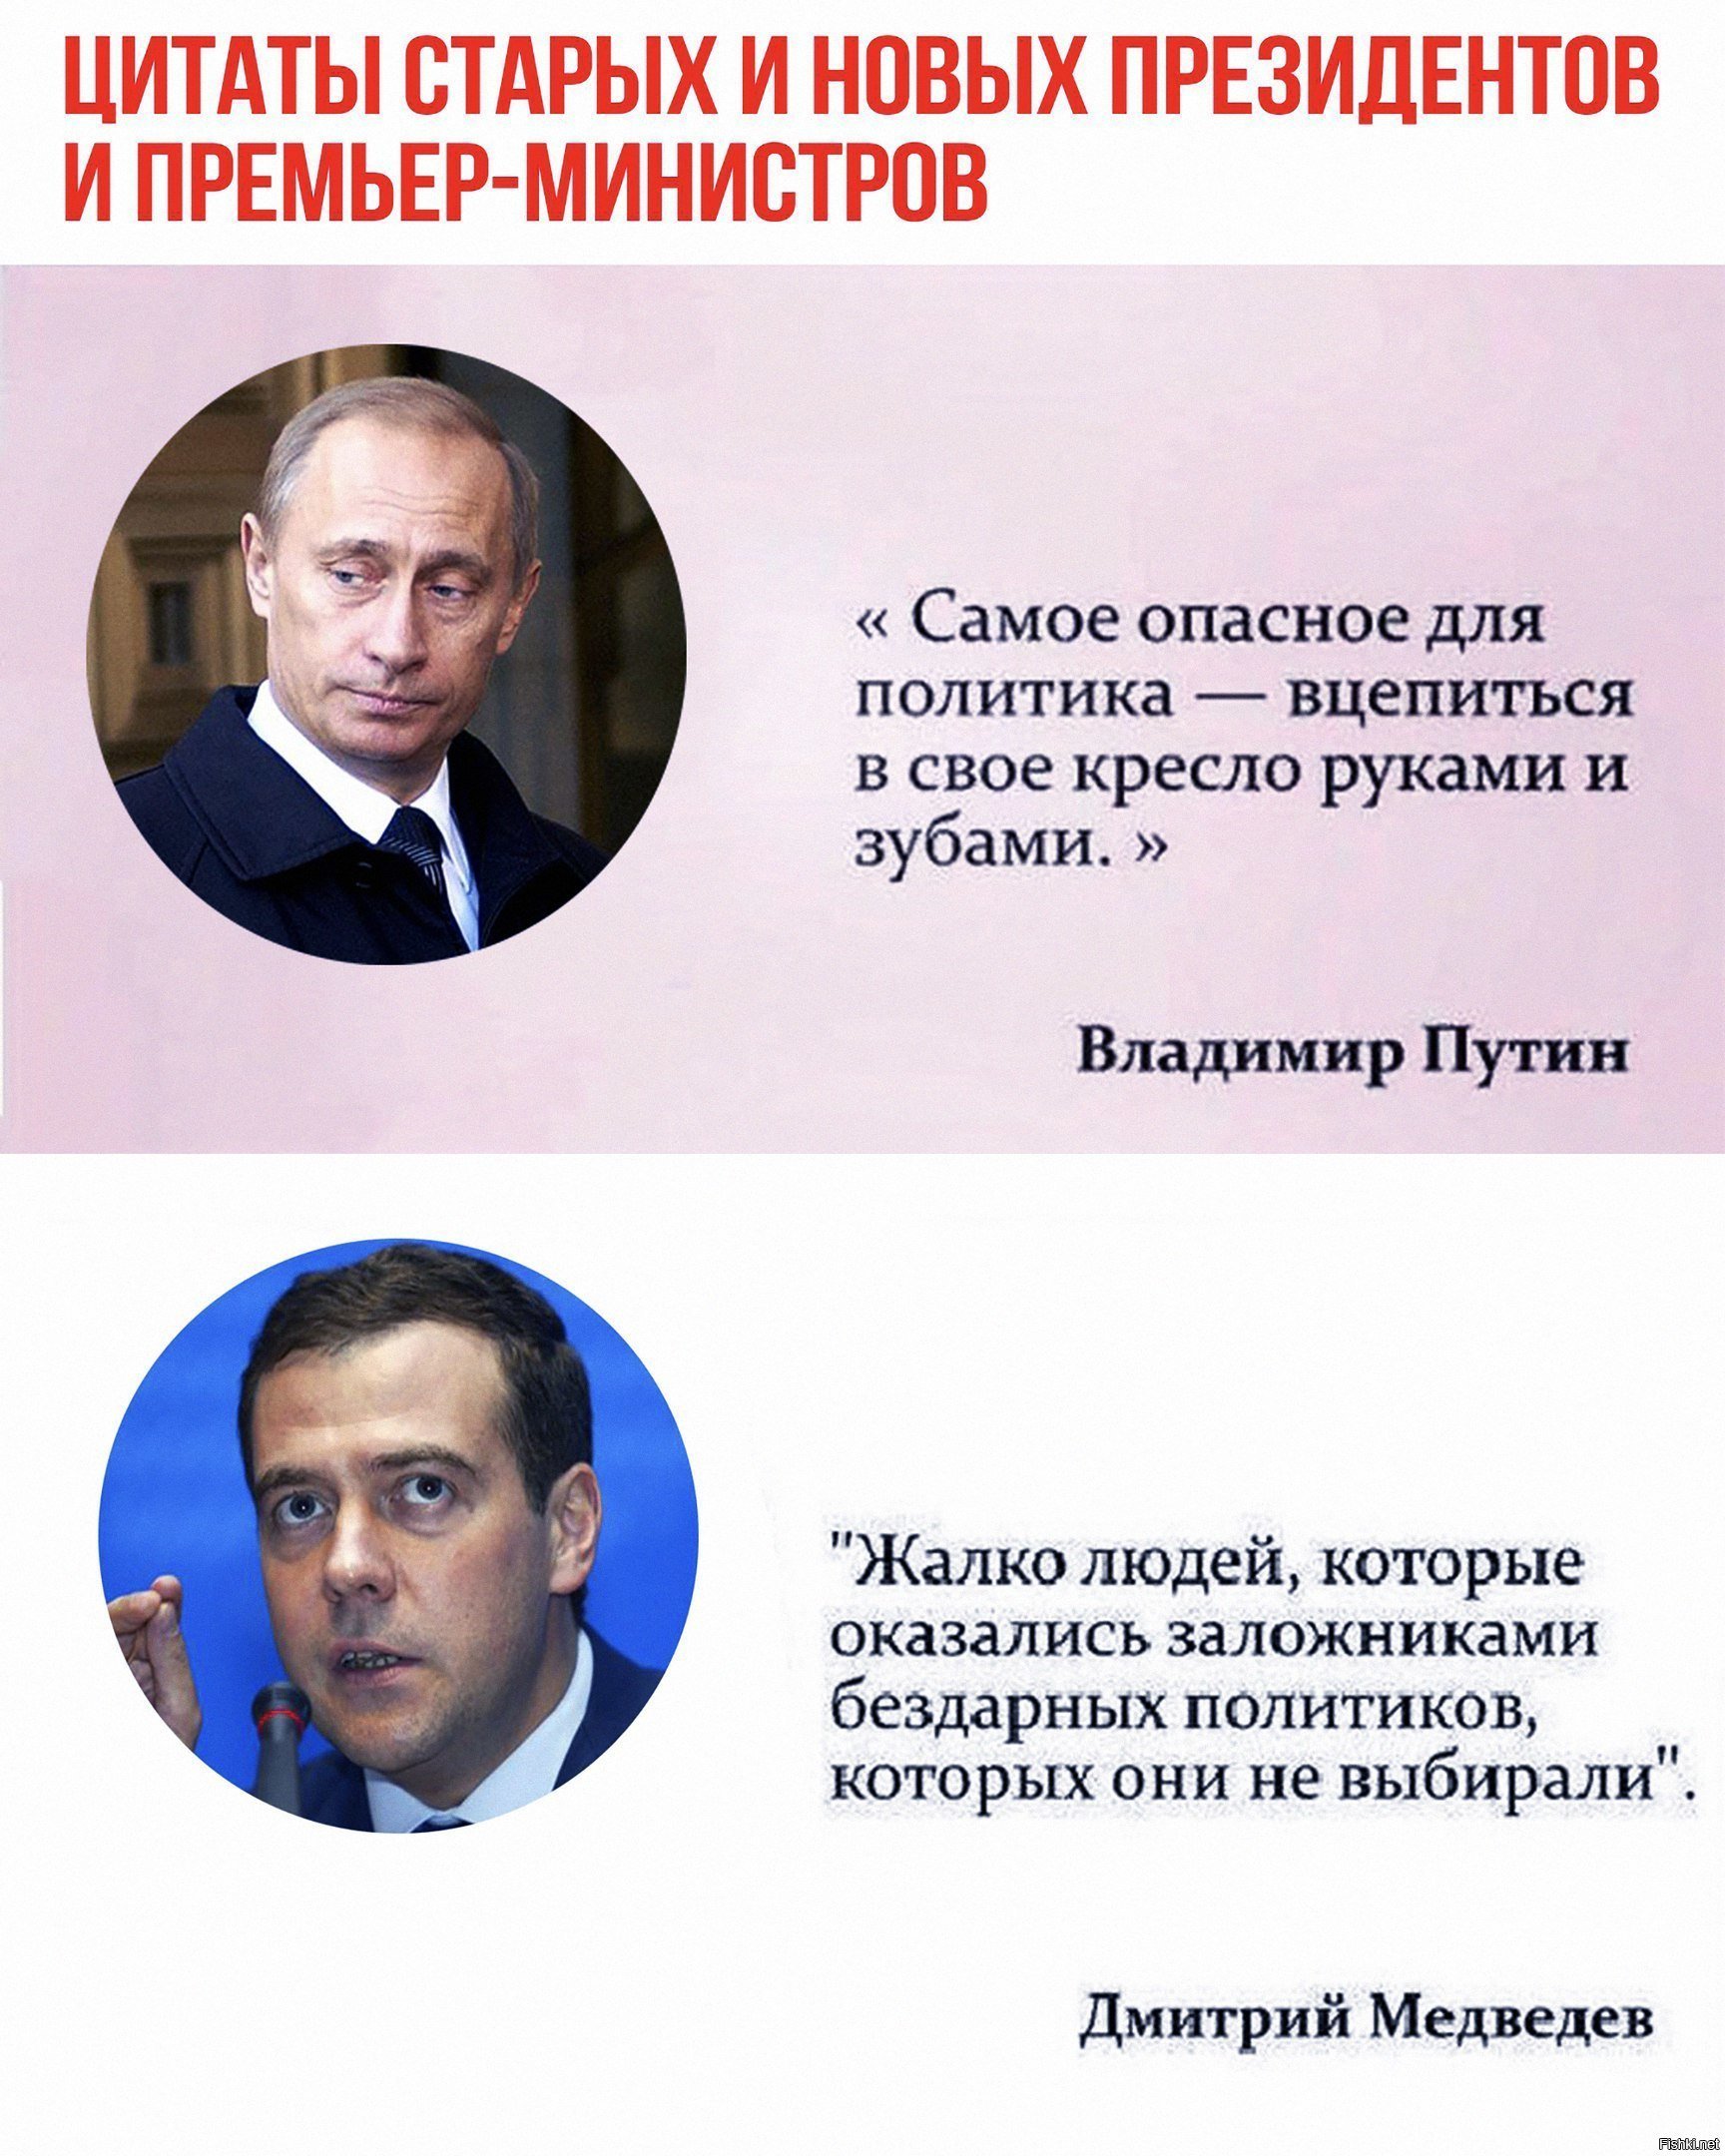 Политик который всегда. Высказывания политиков. Цитаты политиков. Цитаты великих политиков. Цитаты Путина и Медведева.